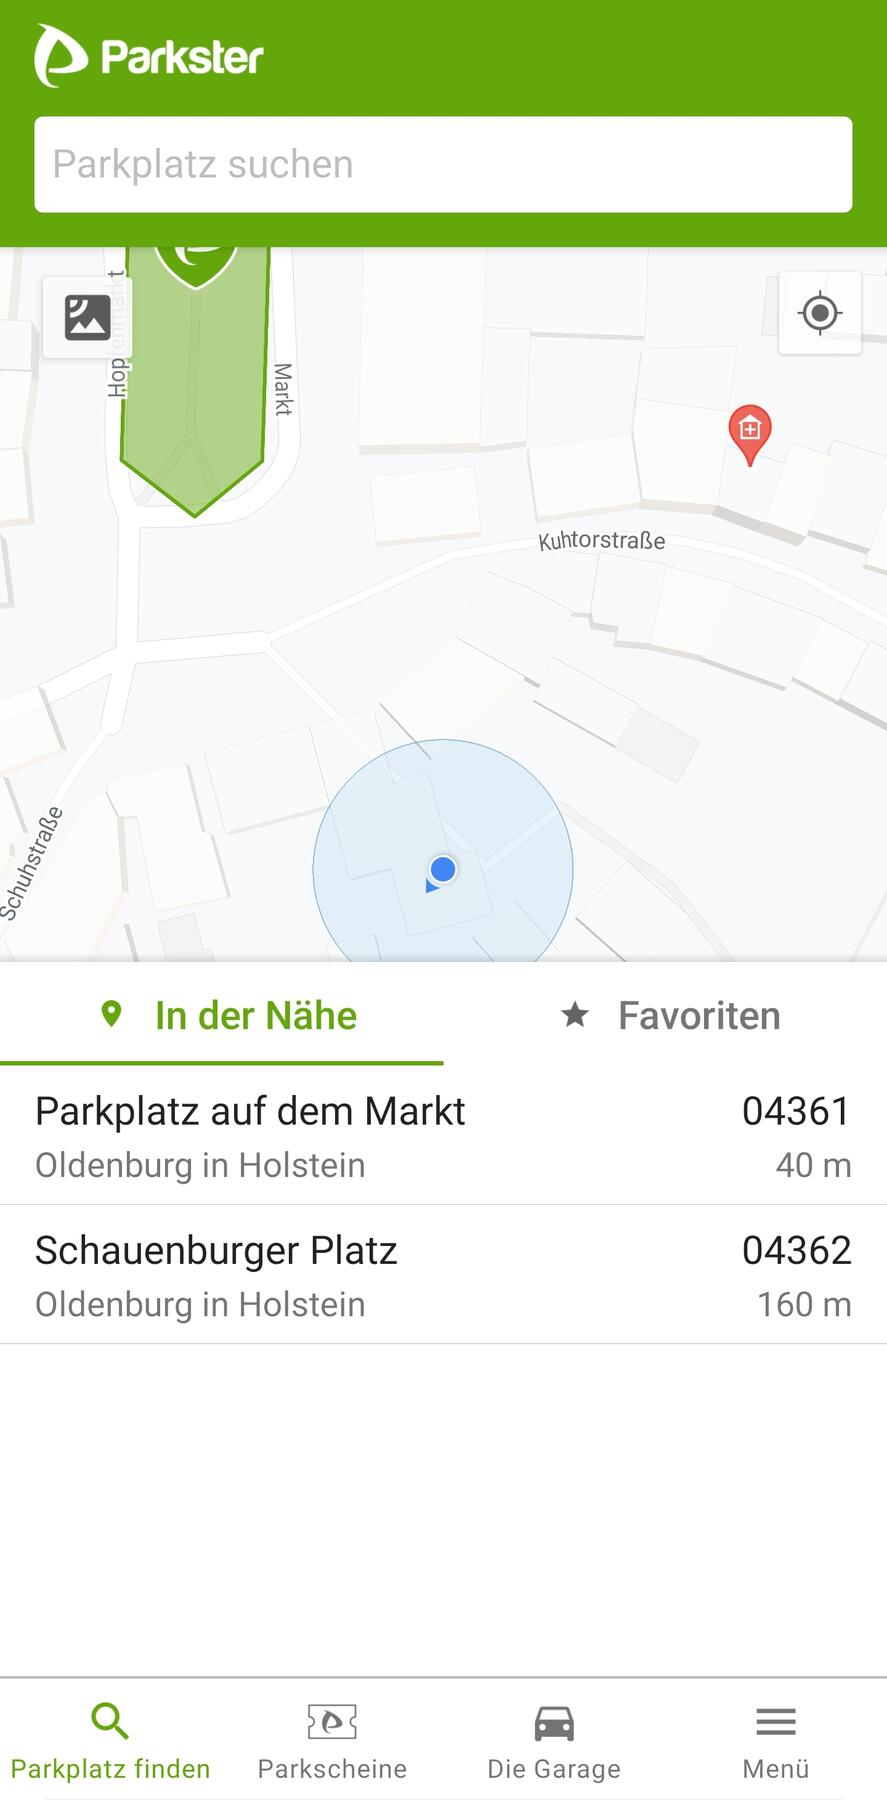 Parkster_Parkplatz_suchen